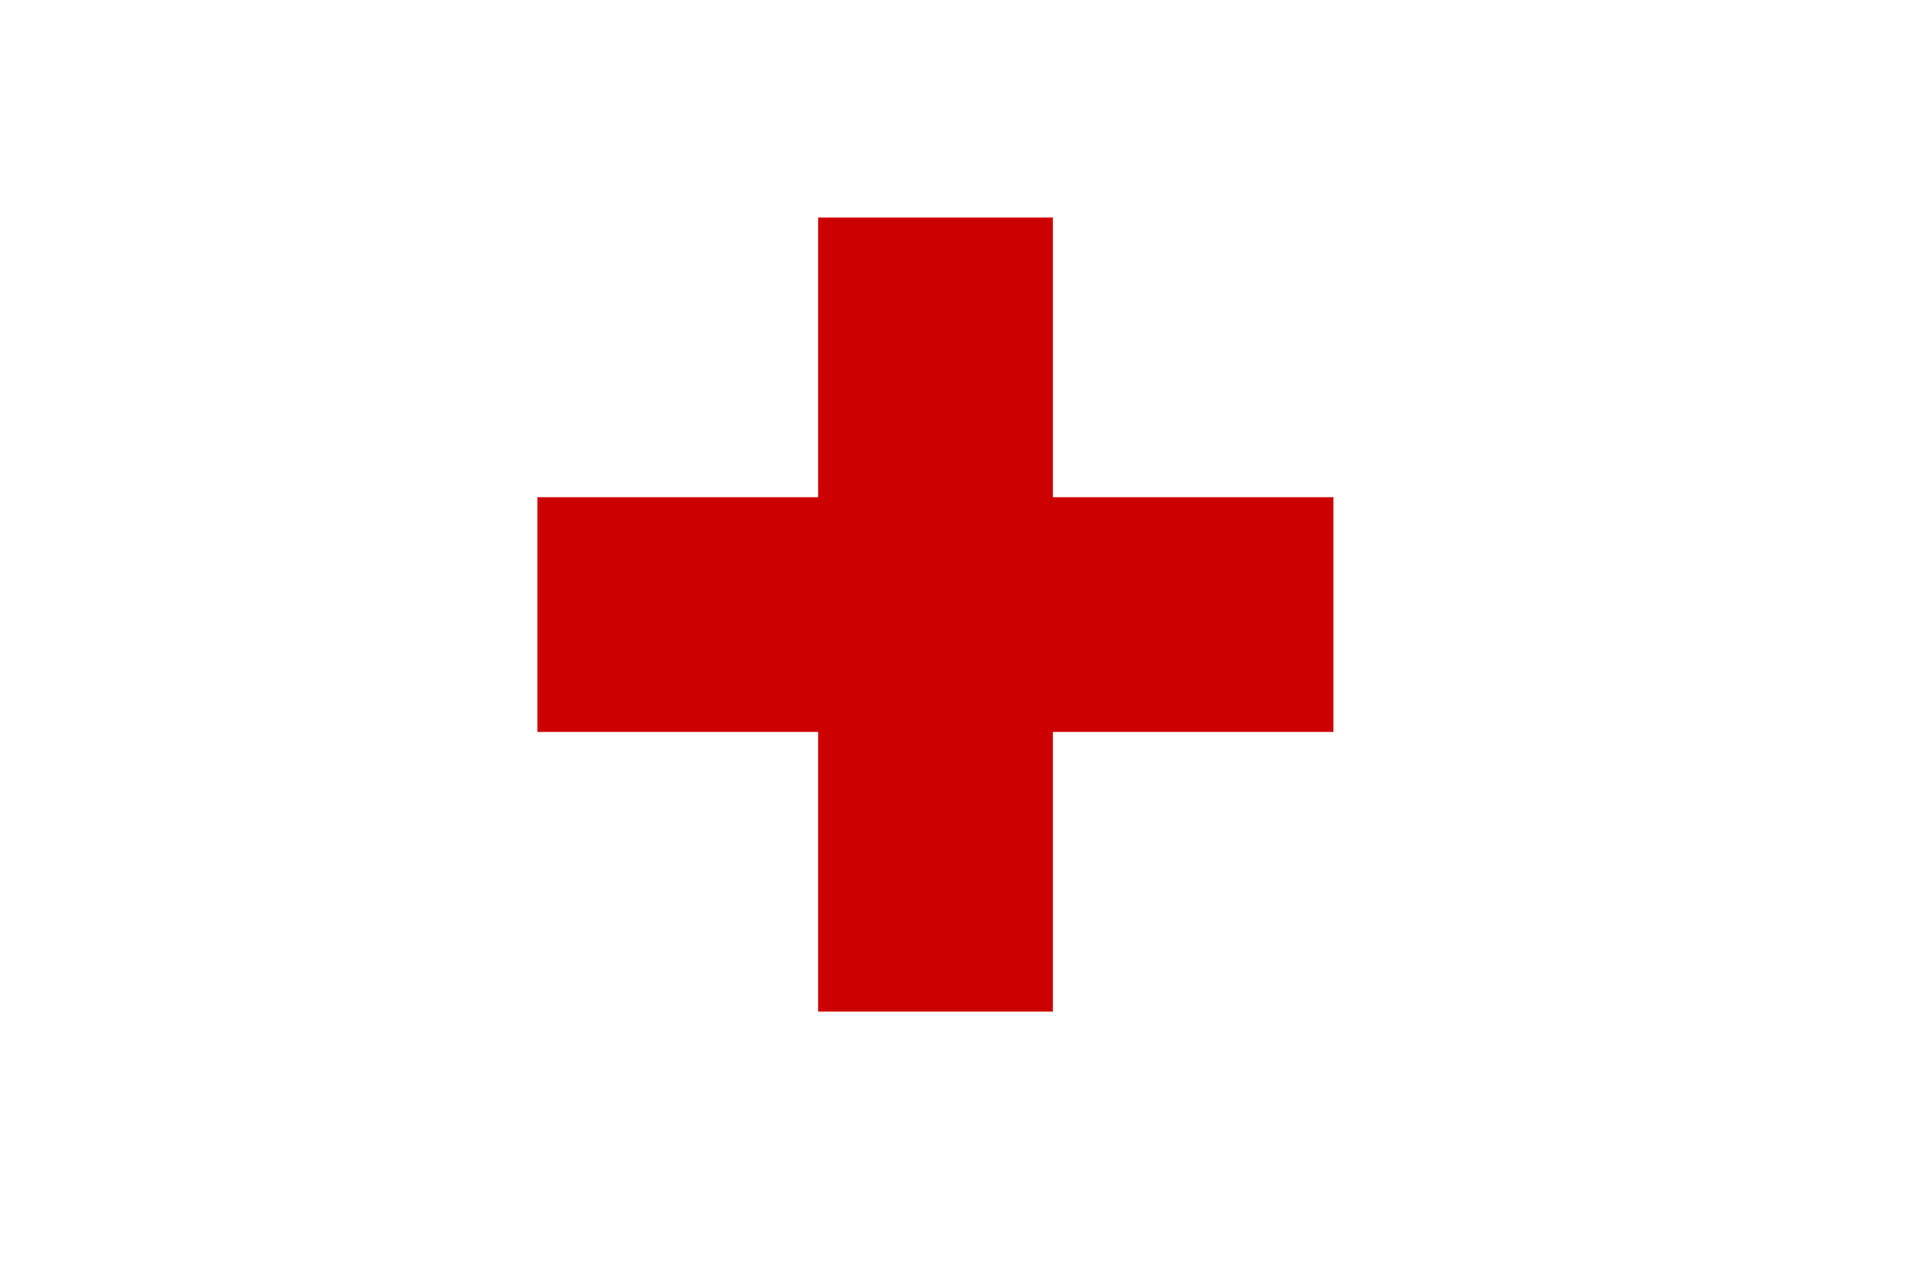 Galeria składa się z 4 czerwonych symboli ułożonych w dwóch rzędach. Pierwszy symbol: czerwony krzyż o równych ramionach.